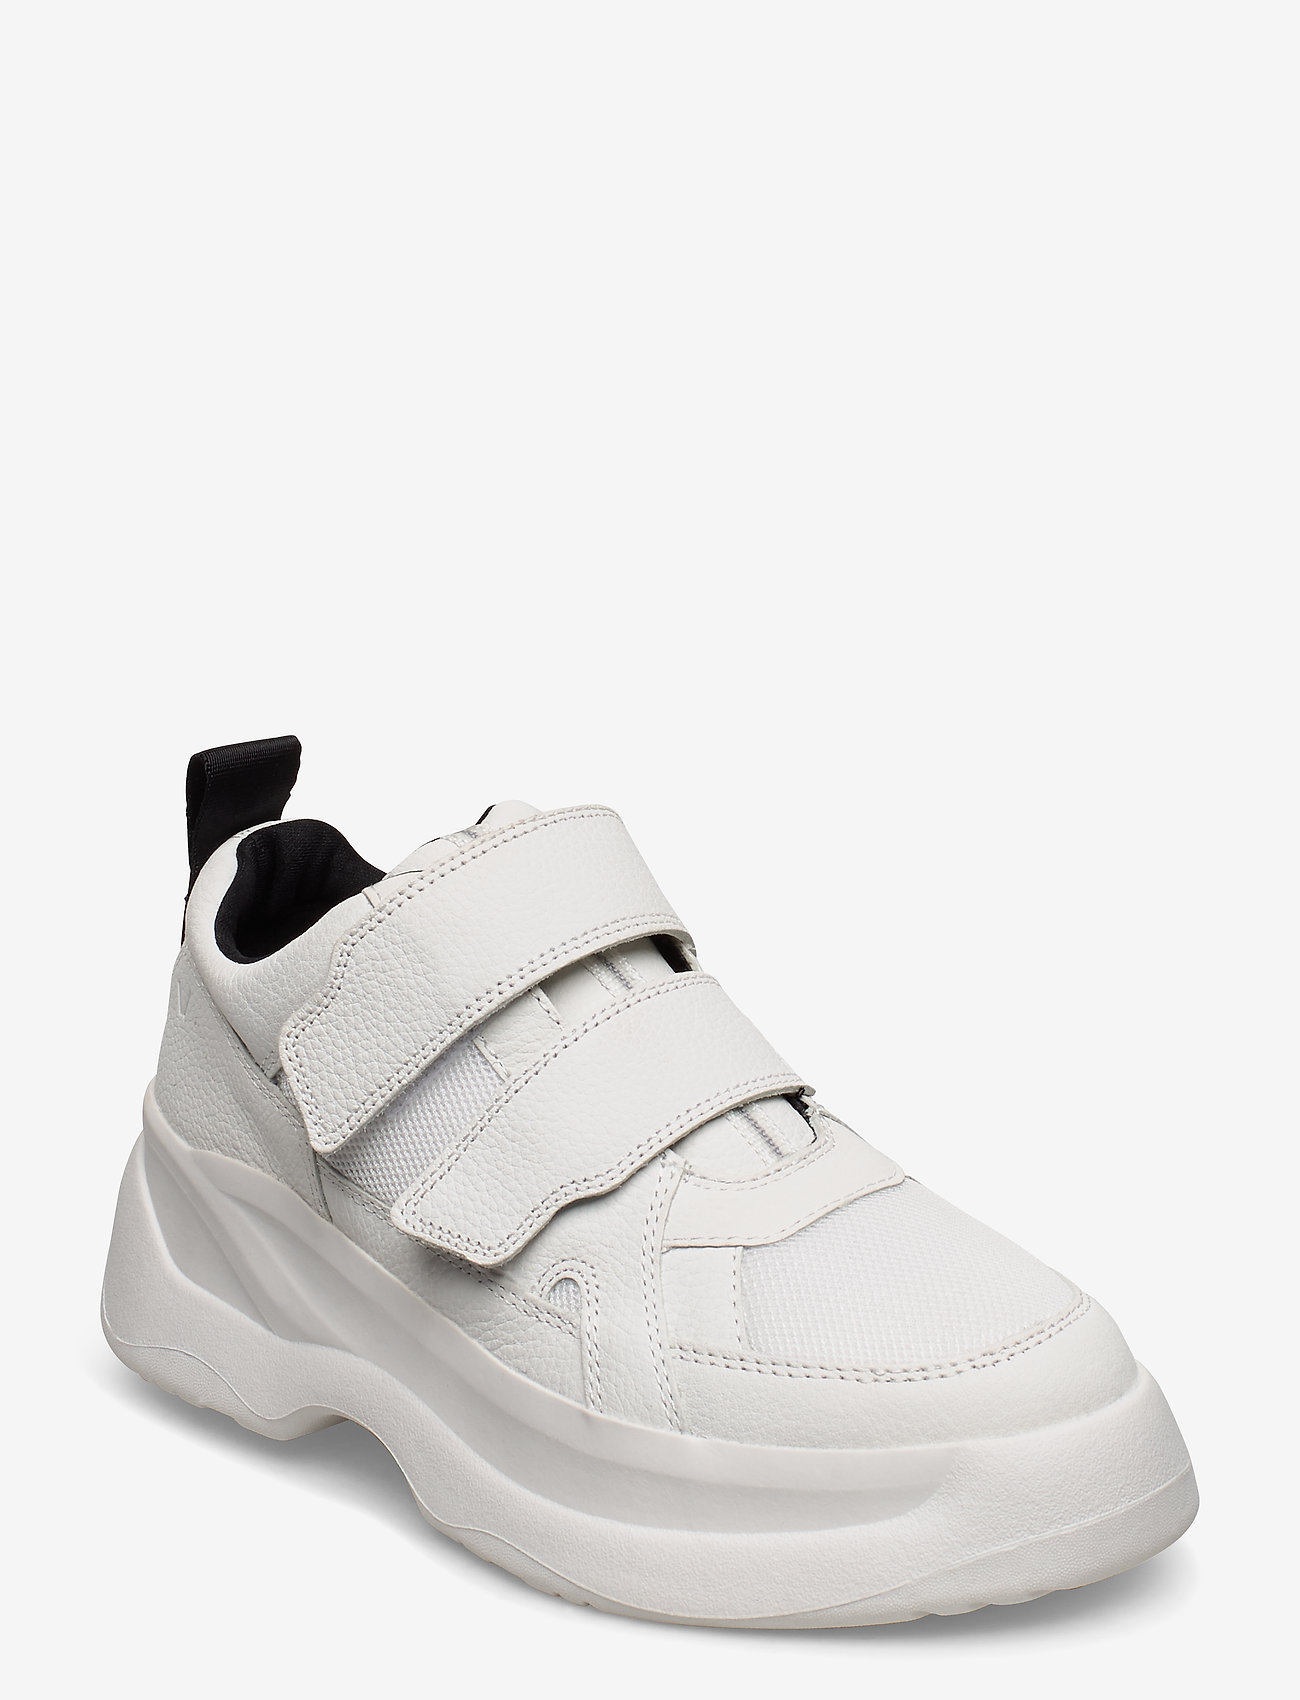 vagabond sport shoes